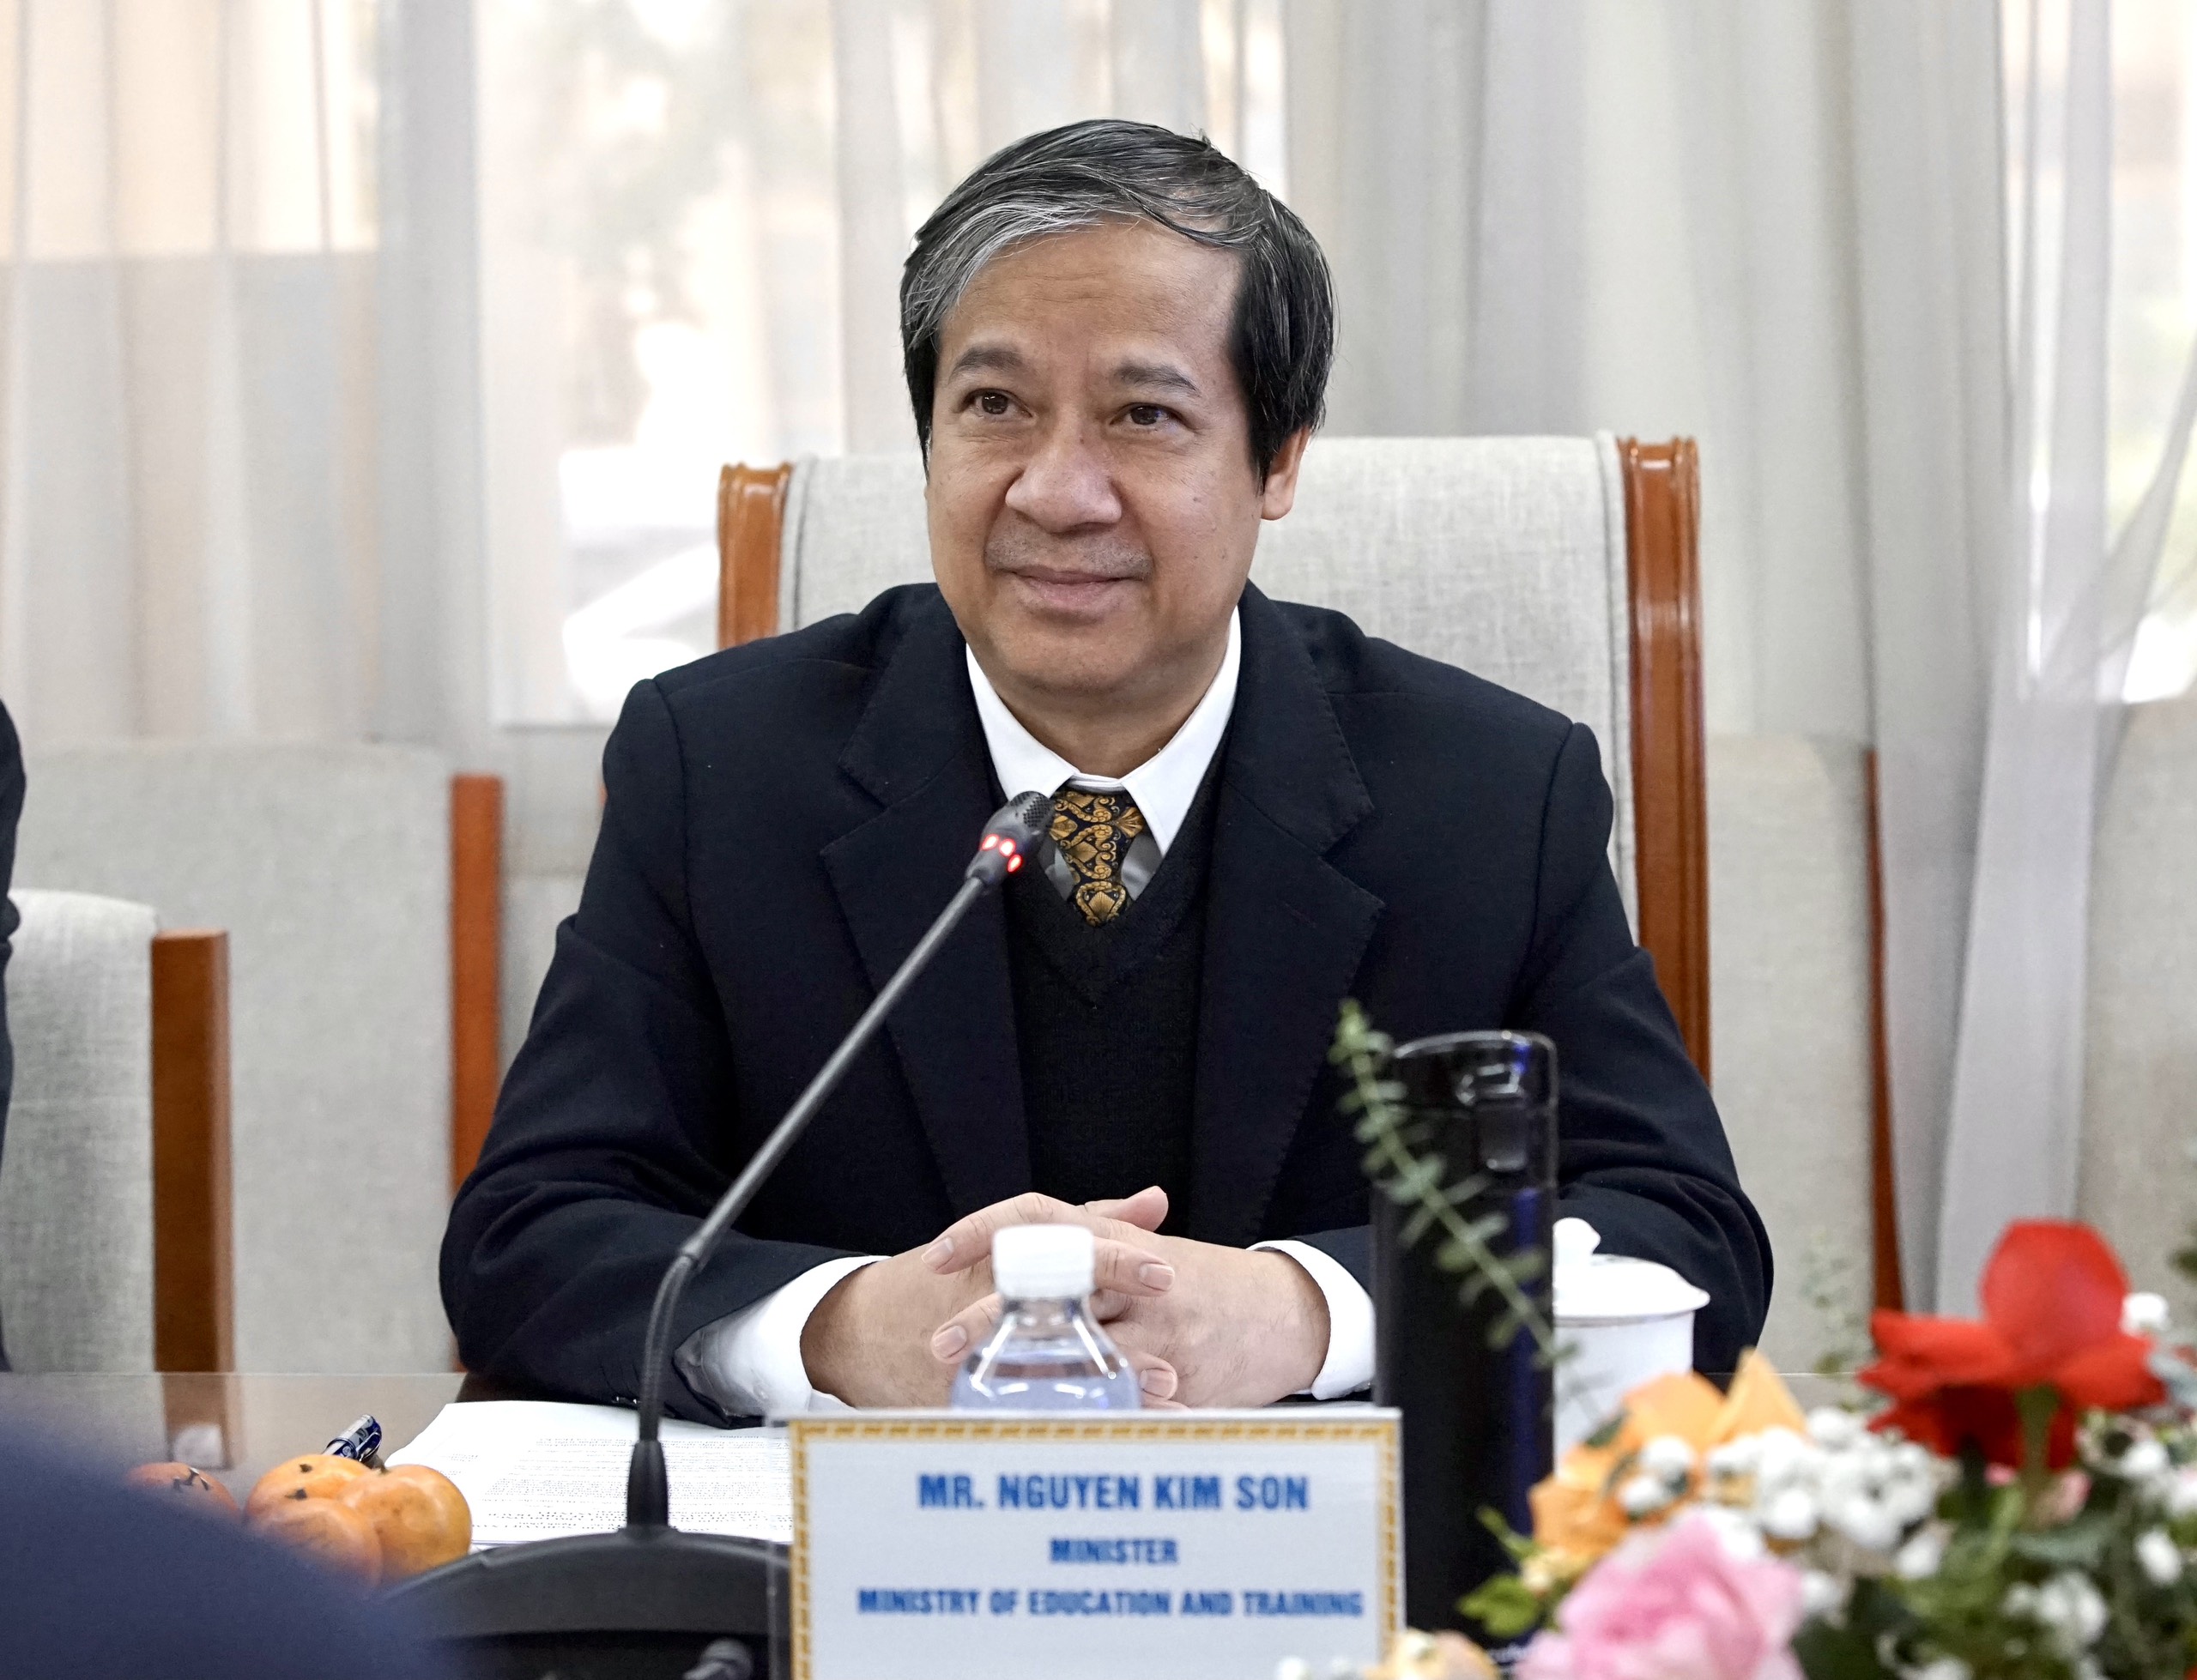 Bộ trưởng Nguyễn Kim Sơn phát biểu tại buổi tiếp.